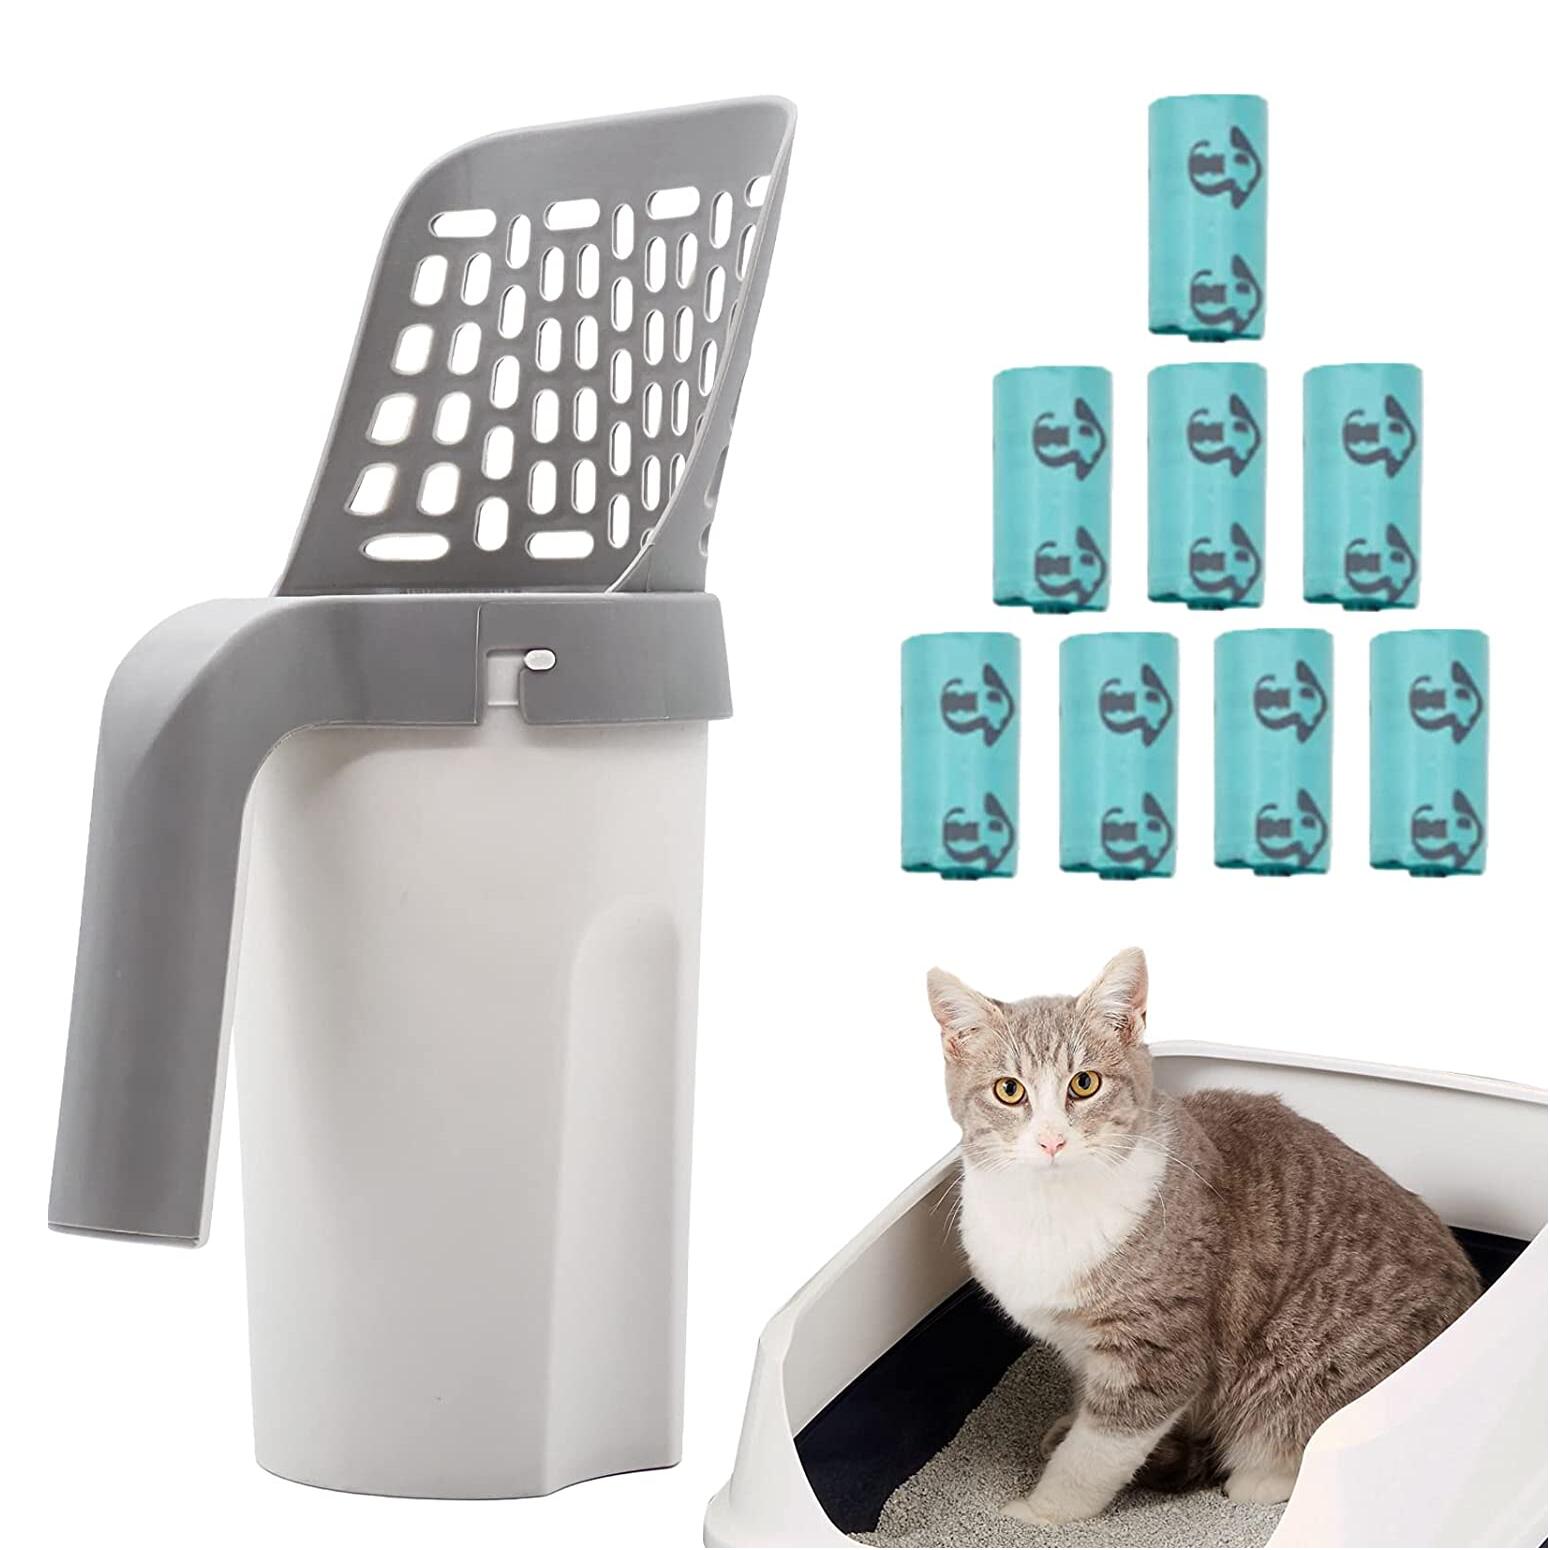 【スタンド付き2in1シャベル】猫砂シャベル＋猫砂箱＋ゴミ袋の組み合わせのユニークなデザインです。 掃除も回収もオールインワン、ただのシャベルだけではなく、予備のバッグも付いているので、片手でペットの排泄物を片付けることができ、とても便利で毎日のお掃除に適しています。 【デザイン性と機能性が高い】数多くの猫トイレスコップと猫砂スコップの候補製品から勝ち抜き、猫スコップと独特な収納用コンテナがぴったり合体でき、まさに芸術性と機能性を兼ね備える逸品です。 【135カウントのゴミ袋とペットの糞袋ディスペンサー】135カウントの糞ゴミ袋が含まれています。これらのバッグは高品質の香水で作られており、缶詰のゴミの臭いを効果的に減らすことができます。パッケージにはバッグディスペンサーも含まれています。ディスペンサーに予備のバッグを入れて、バッグや犬の首輪に掛けて簡単に旅行したり、装飾として使用したりできます。 【環境に優しい製品】猫砂シャベルの収納用コンテナが塵取として使えるため、砂取り用品として猫砂が床を汚れることがなく、ゴミ袋の使用減少で、ゴミ分類の負担軽減も実現し、環境保全に貢献できます。 【絶妙な穴の大きさ】ネコトイレスコップの穴間隔は8mmで、全体に施された穴でシッカリすくい、うまく余分な猫砂が落ちて砂の節約ができます。猫砂のお手入れに役たち、 すくう・ふるい落とし・捨てるといった作業が一気に完成します。 【優れる材質とお洒落加工】良質なABS粒子を採用で、軽さと硬度をバランスよく保ち、使い勝手の良さと長持ちを兼備し、超音波の溶着で製品表面はつるつるで高級感が溢れ、製品のより美しさを実感できます。 【抜群の安定性】巧妙な角度を作って猫用スコップセットが自立でき、非常に安定で、場所を取らず、 とてもスッキリ！カッコ良くて、なかなか猫トイレ用品には見えません。 【快適なハンドルとユニークな中空デザイン】人間工学に適したハンドルは、ごみ箱からすくうときに曲がったり、壊れたり、揺れたりするのを防ぎます。 また、トイレで手を汚すことなく、猫のうんちをすばやくきれいにします。長年の経験に基づいて、あらゆる形状のケーキ砂をすばやく分離する独自の中空猫砂用スクープを設計しました。 【アドバイス】当社のスプーンは、子猫や子犬のいるご家庭に適しています。 1～2日おきにトイレを掃除することをお勧めします。非常に大きな塊の場合は、すくう前にスプーンの端を使用して塊を半分に切ることができます。また、犬の散歩にディスペンサーとゴミ袋を持っていくと、犬のうんちの問題に対処しやすくなります。 【商品仕様】 MYPIN 一体型猫砂シャベル スタンド付き バケツのサイズ：約16 x 12 x 29cm ケーキ砂専用 片手で袋に直接すくう 面倒な家事が少し楽になる 【パッケージ】 1 * スタンド付き猫用スプーン 135*ゴミ袋（15袋×9箱） 1 * ペット用便袋分配器当商品の関連商品も取り扱っております ワイヤレスチャイム ペットチャイム 呼び鈴 電池不要 (送信機1 受信機2) 新しいアップグレードされたペットの犬と猫のペットのグルーミングハンモック 自動給餌器 猫 犬用 タイマー式 ペット自動餌やり器 6L大容量 手動給餌可